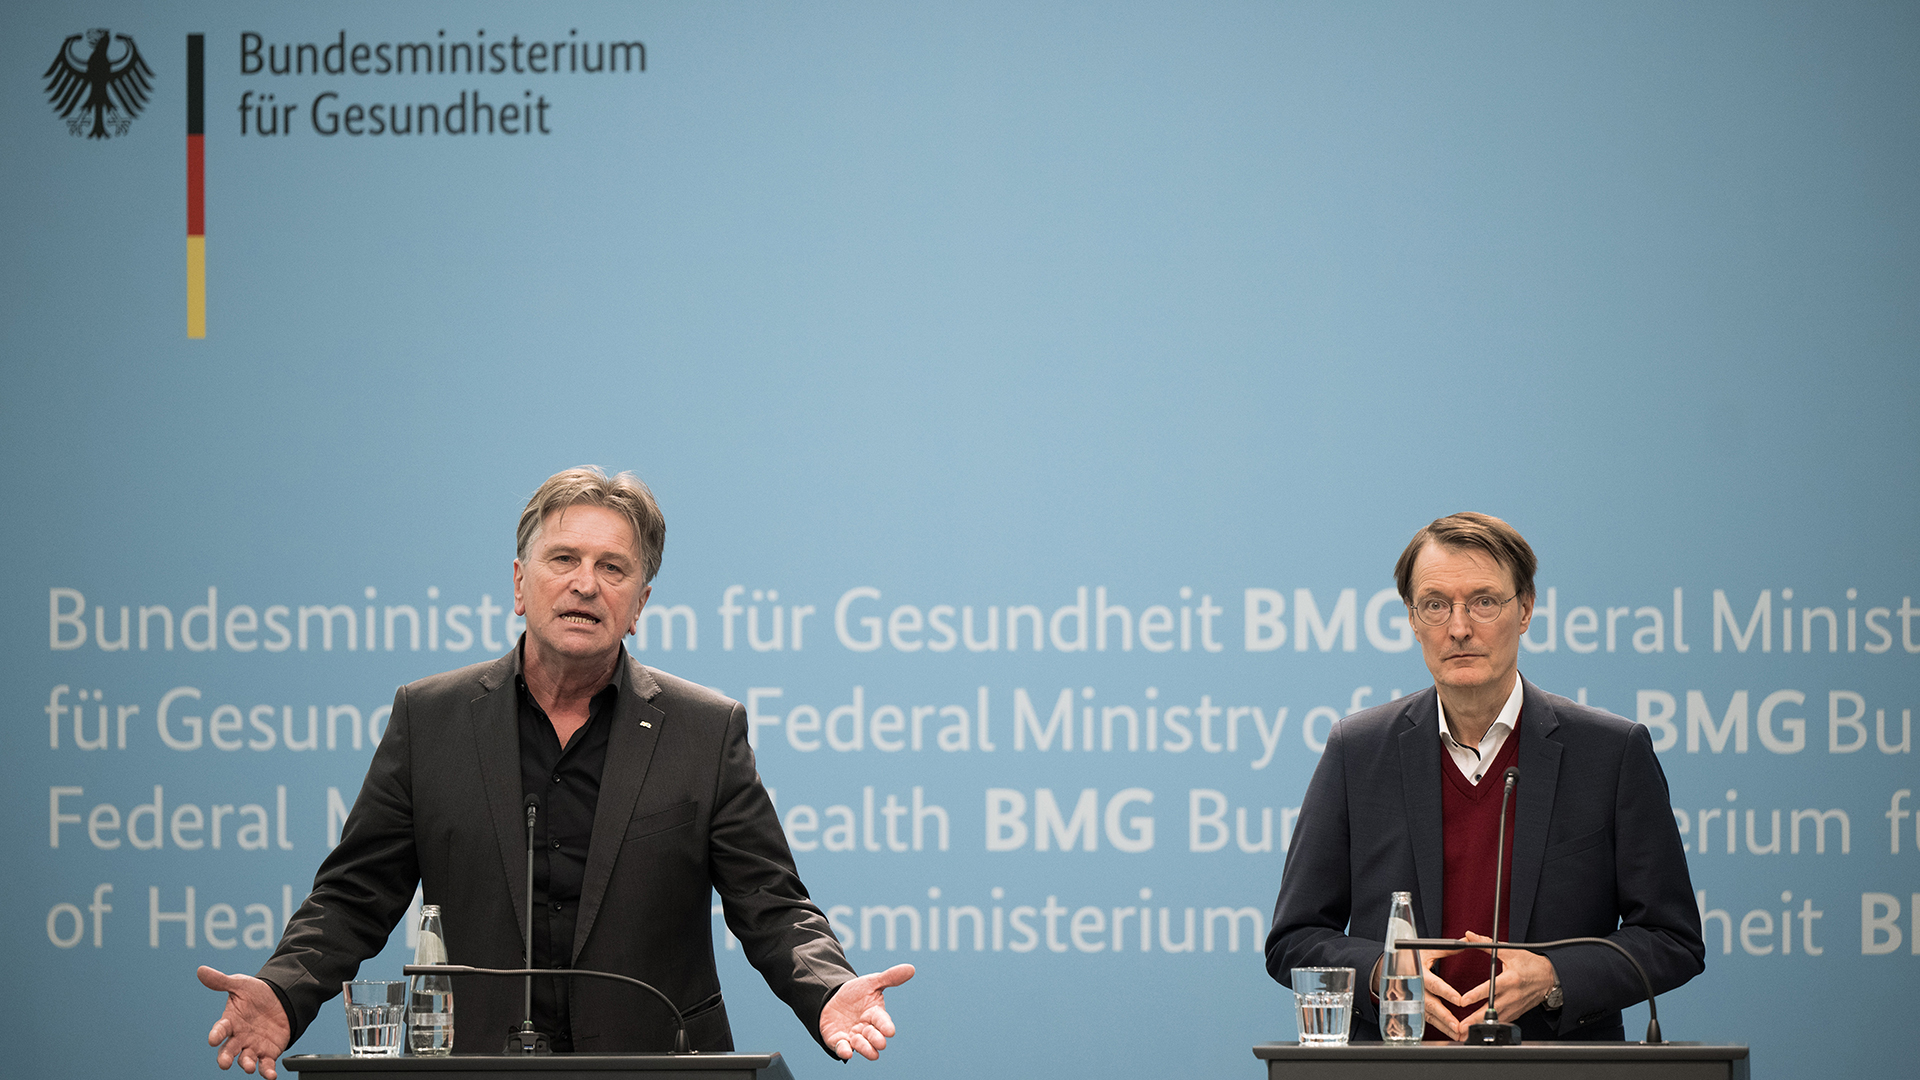 Manfred Lucha (Grüne, l), Baden-Württembergs Minister für Gesundheit und Vorsitzender der Gesundheitsministerkonferenz, und Karl Lauterbach (SPD), Bundesminister für Gesundheit, sprechen nach der Bund-Länder-Runde zur geplanten Krankenhausreform in einer Pressekonferenz.